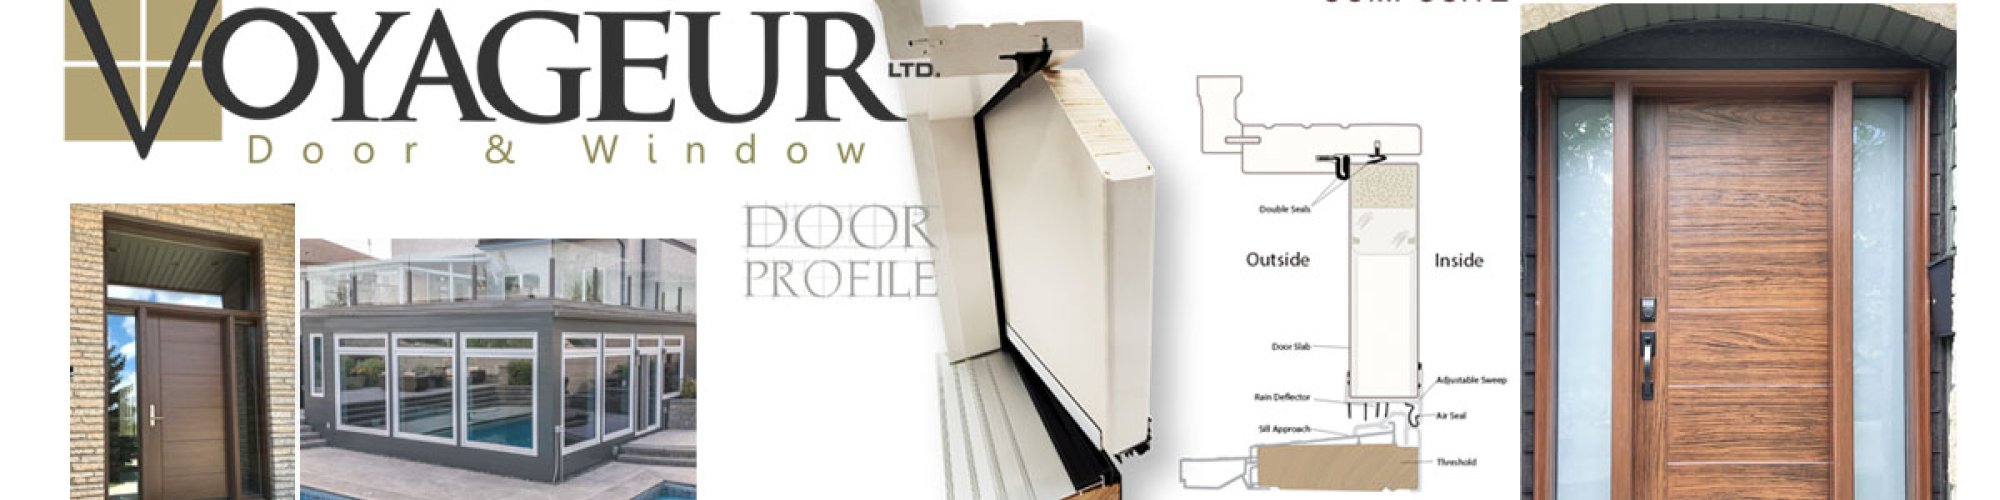 Voyageur Door And Window Ltd